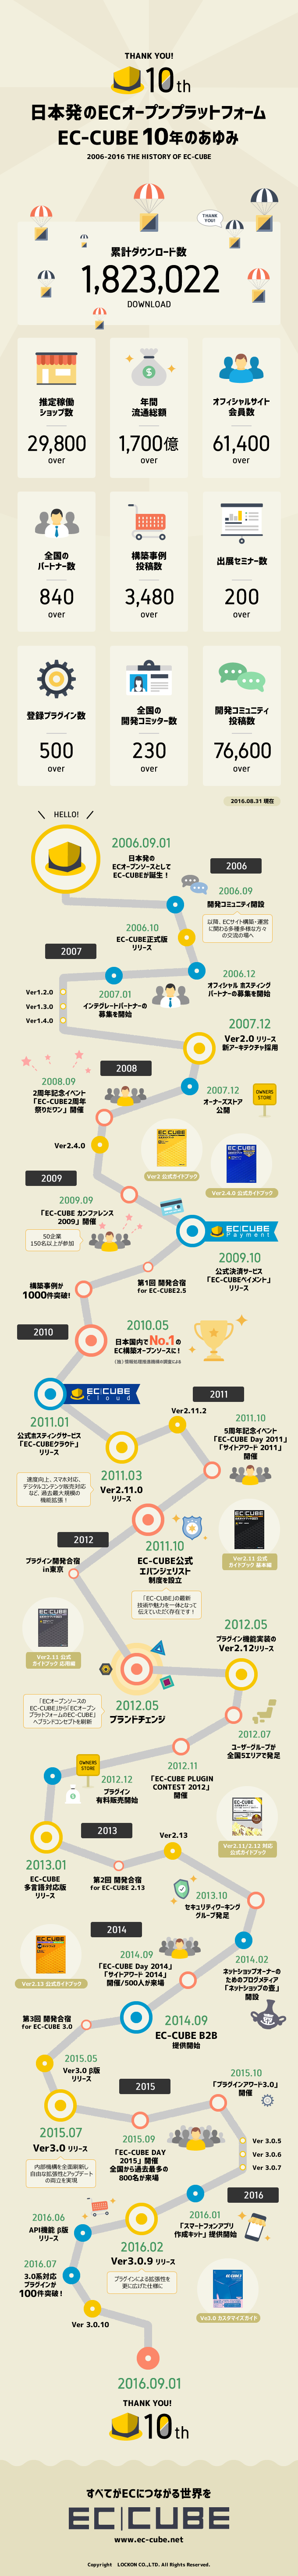 日本発のECオープンプラットフォーム EC-CUBE10年のあゆみ